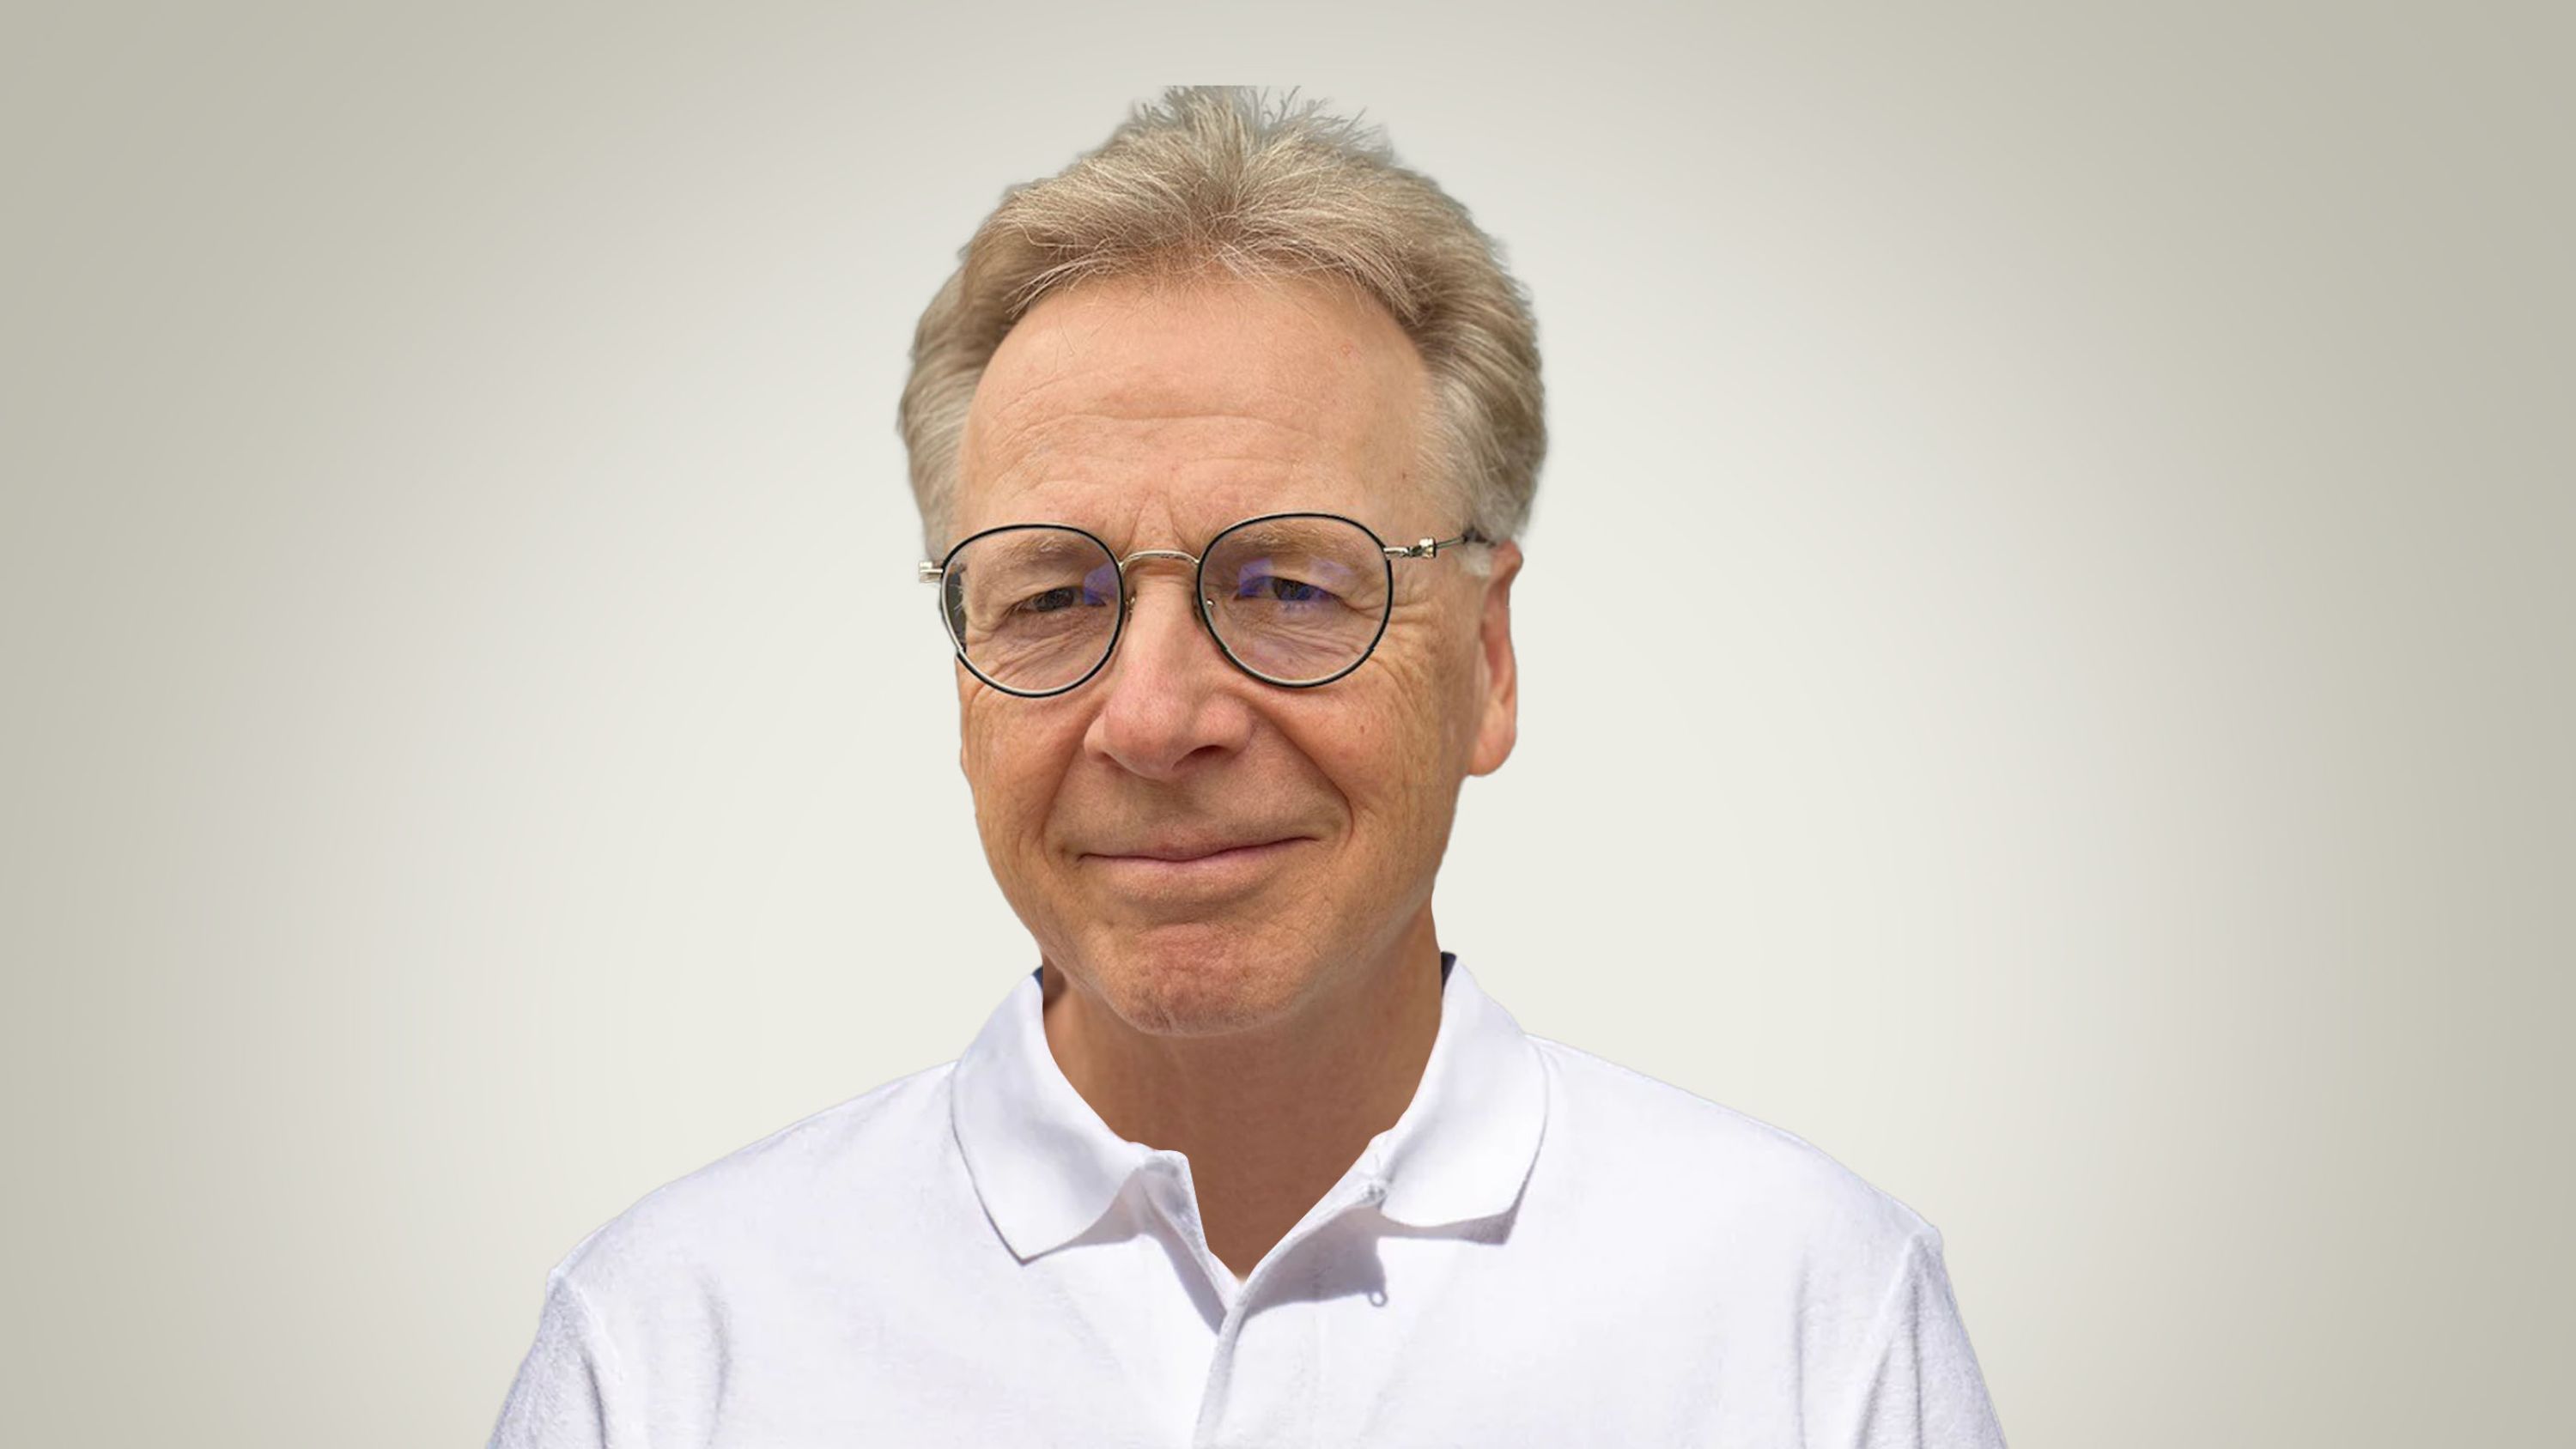 Peter Dietschi, membre du conseil de fondation Pro Senectute Suisse